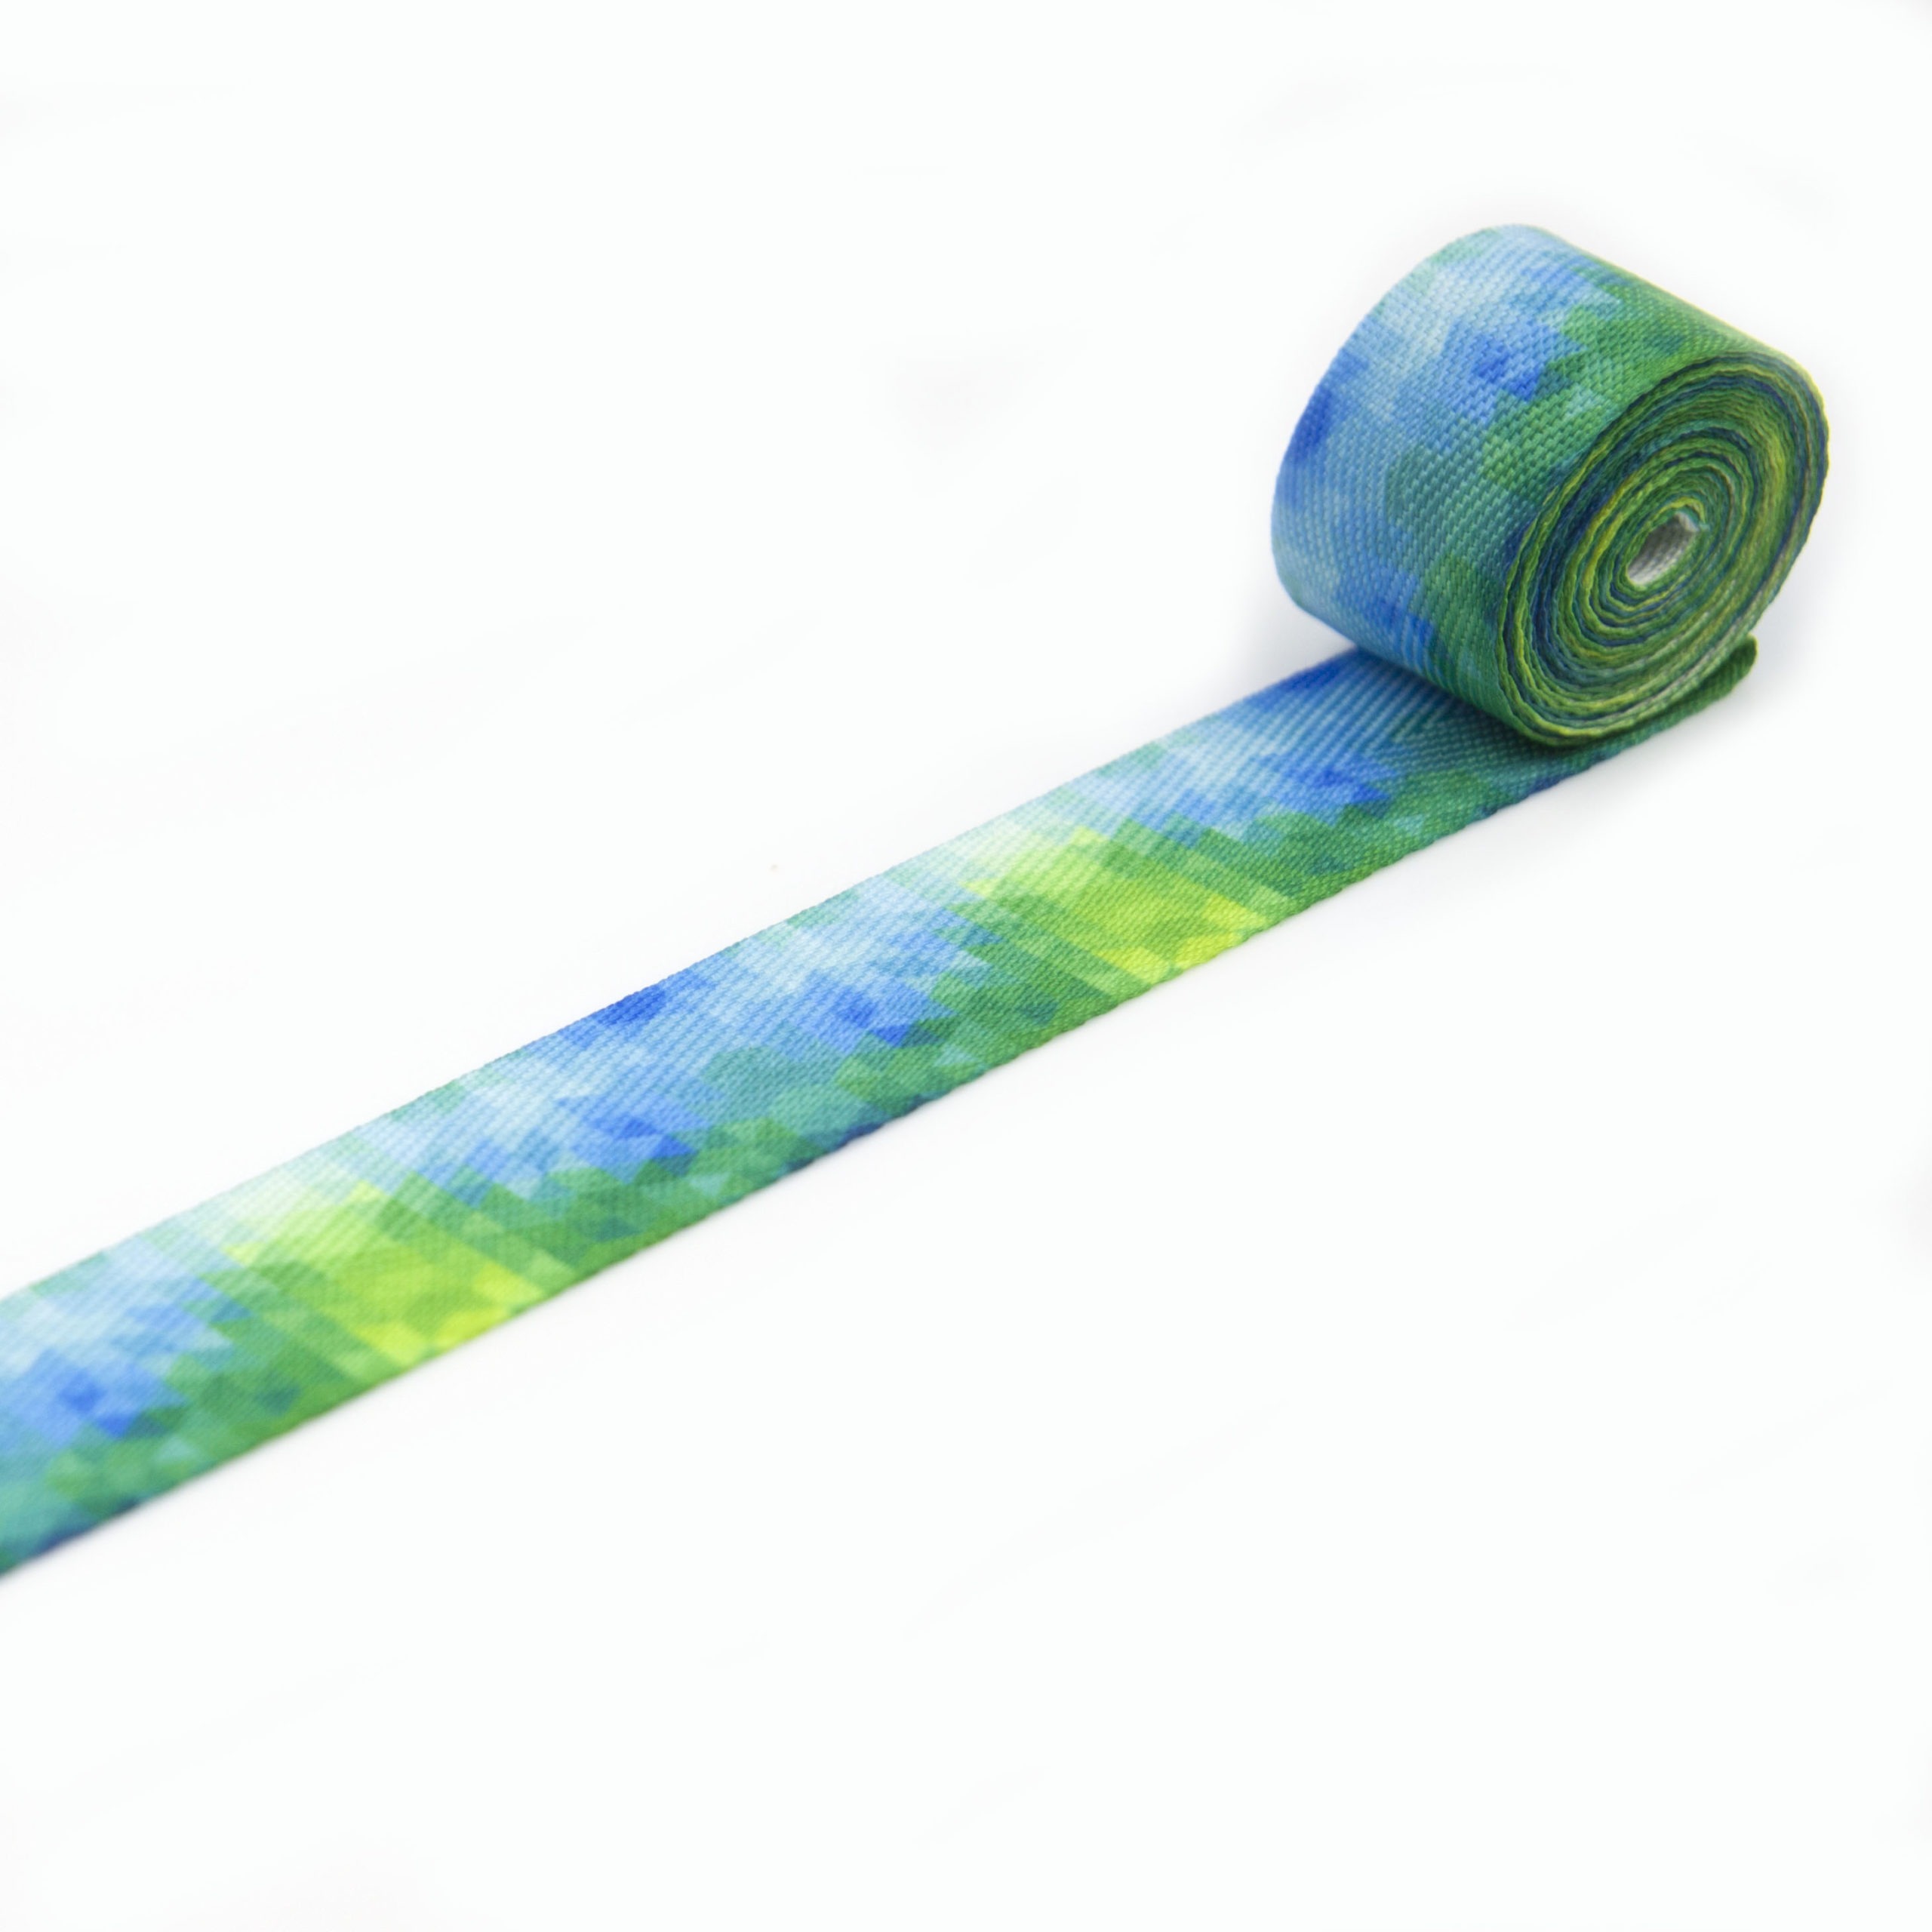 Lamówka tkana jodełka drukowana w kolorowy wzór do odzieży i tkanin dekoracyjnych.